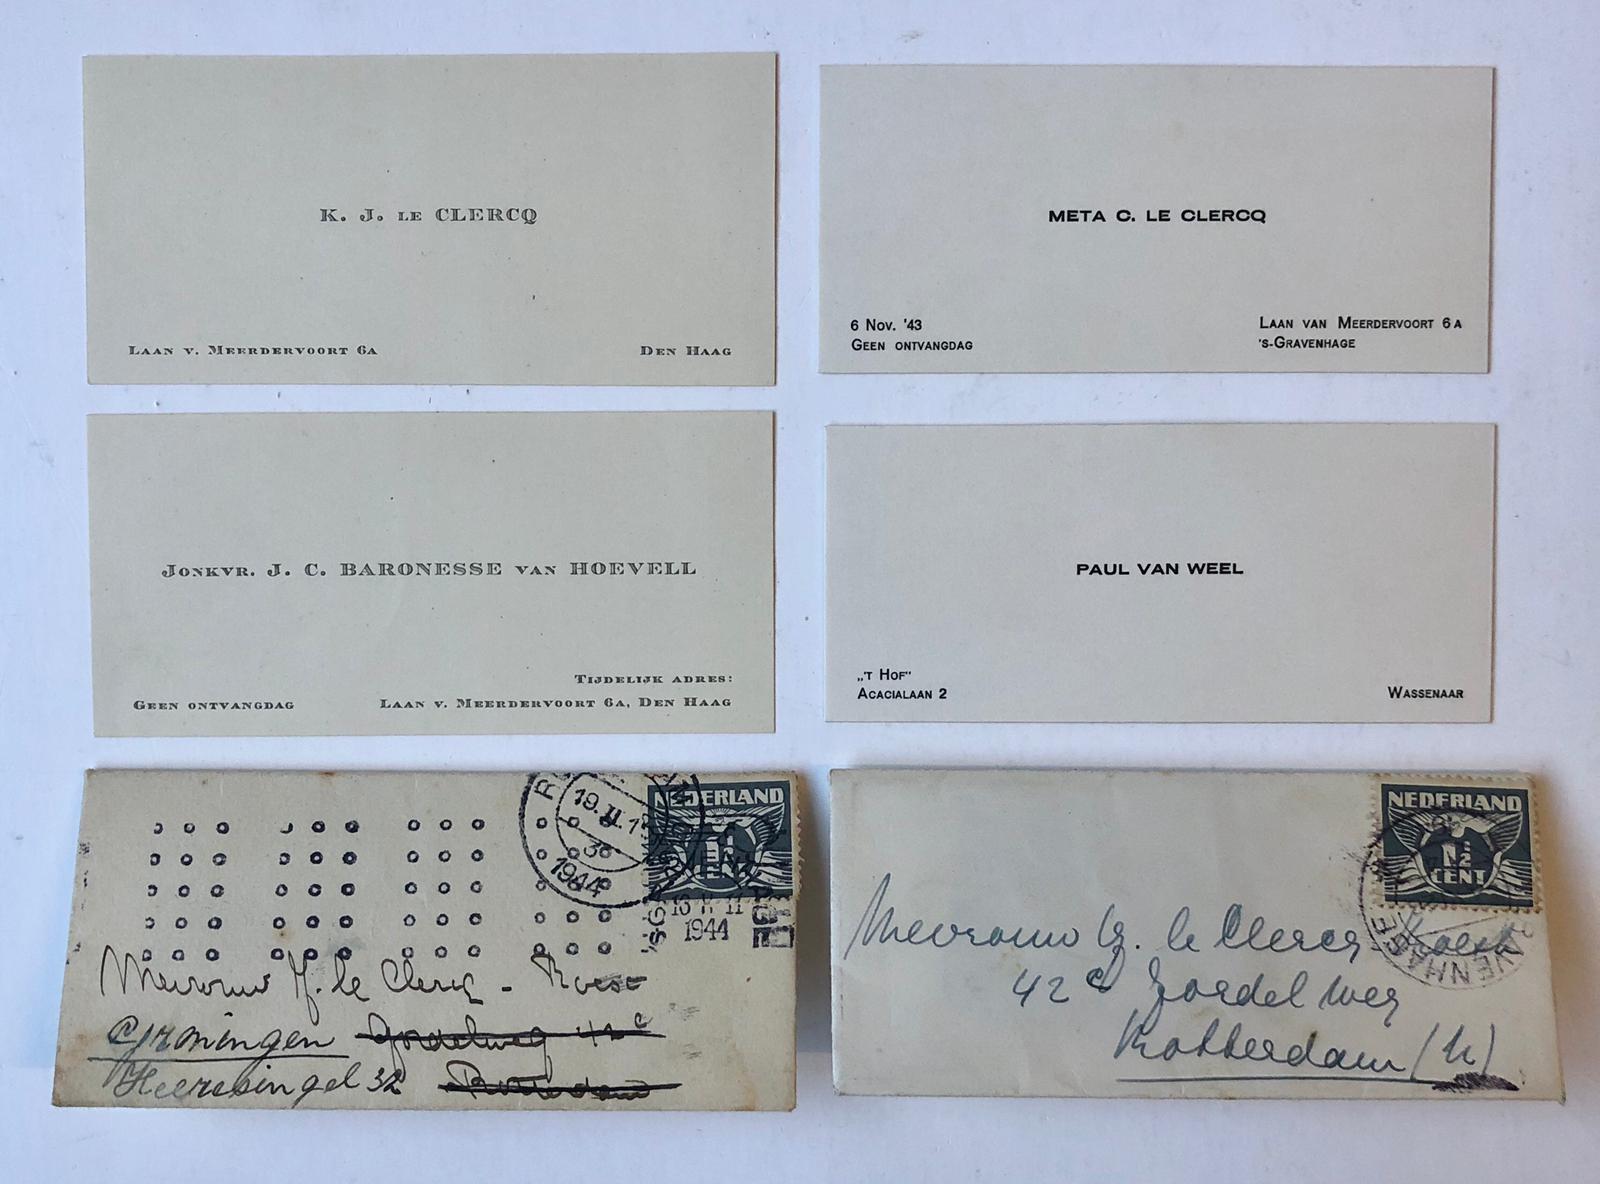 [Printed cards 1944] Twee verlovingskaartjes betr. a. K.J. le Clerq en J.C. baronesse van Hoevell, 1944 en b. Meta C. le Clerq en P. v. Weel, gedrukt.